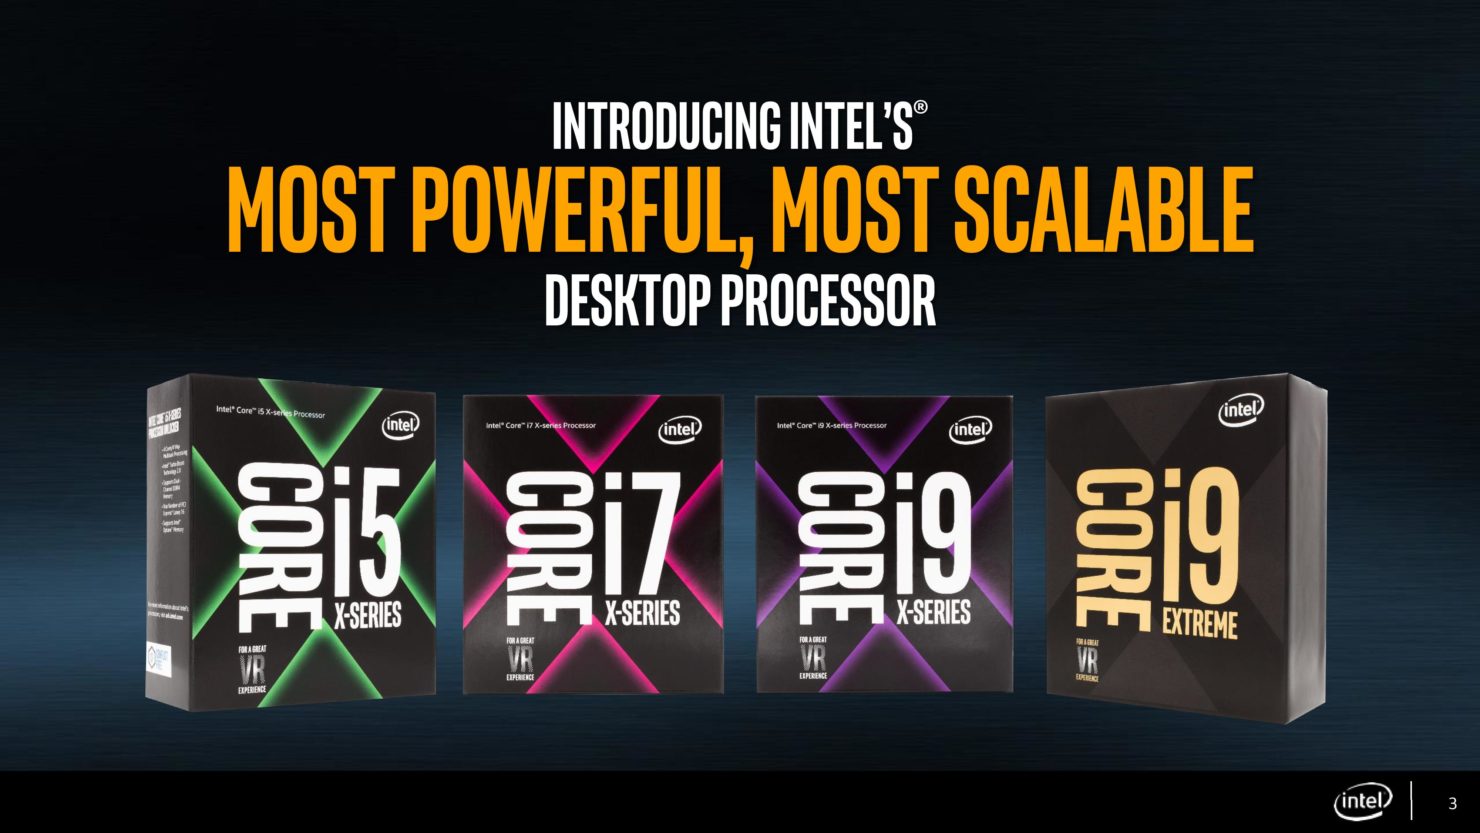 18 çekirdekli Intel Core i9 işlemcisi en erken Ekim ayında piyasada